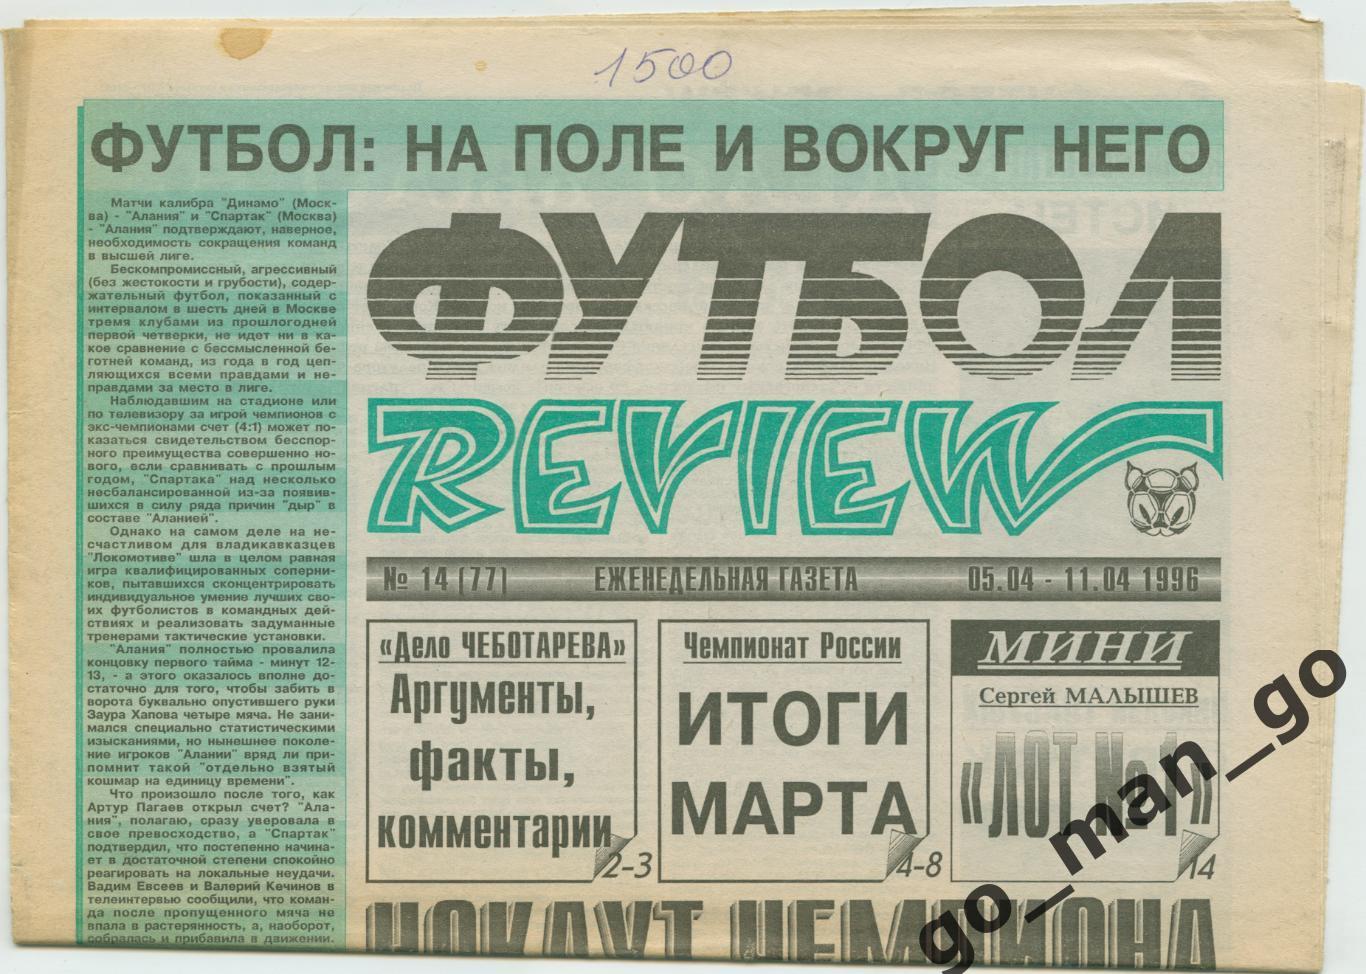 Еженедельник Футбол-Review (Футбол-Ревю), 05-11.04.1996, № 14.